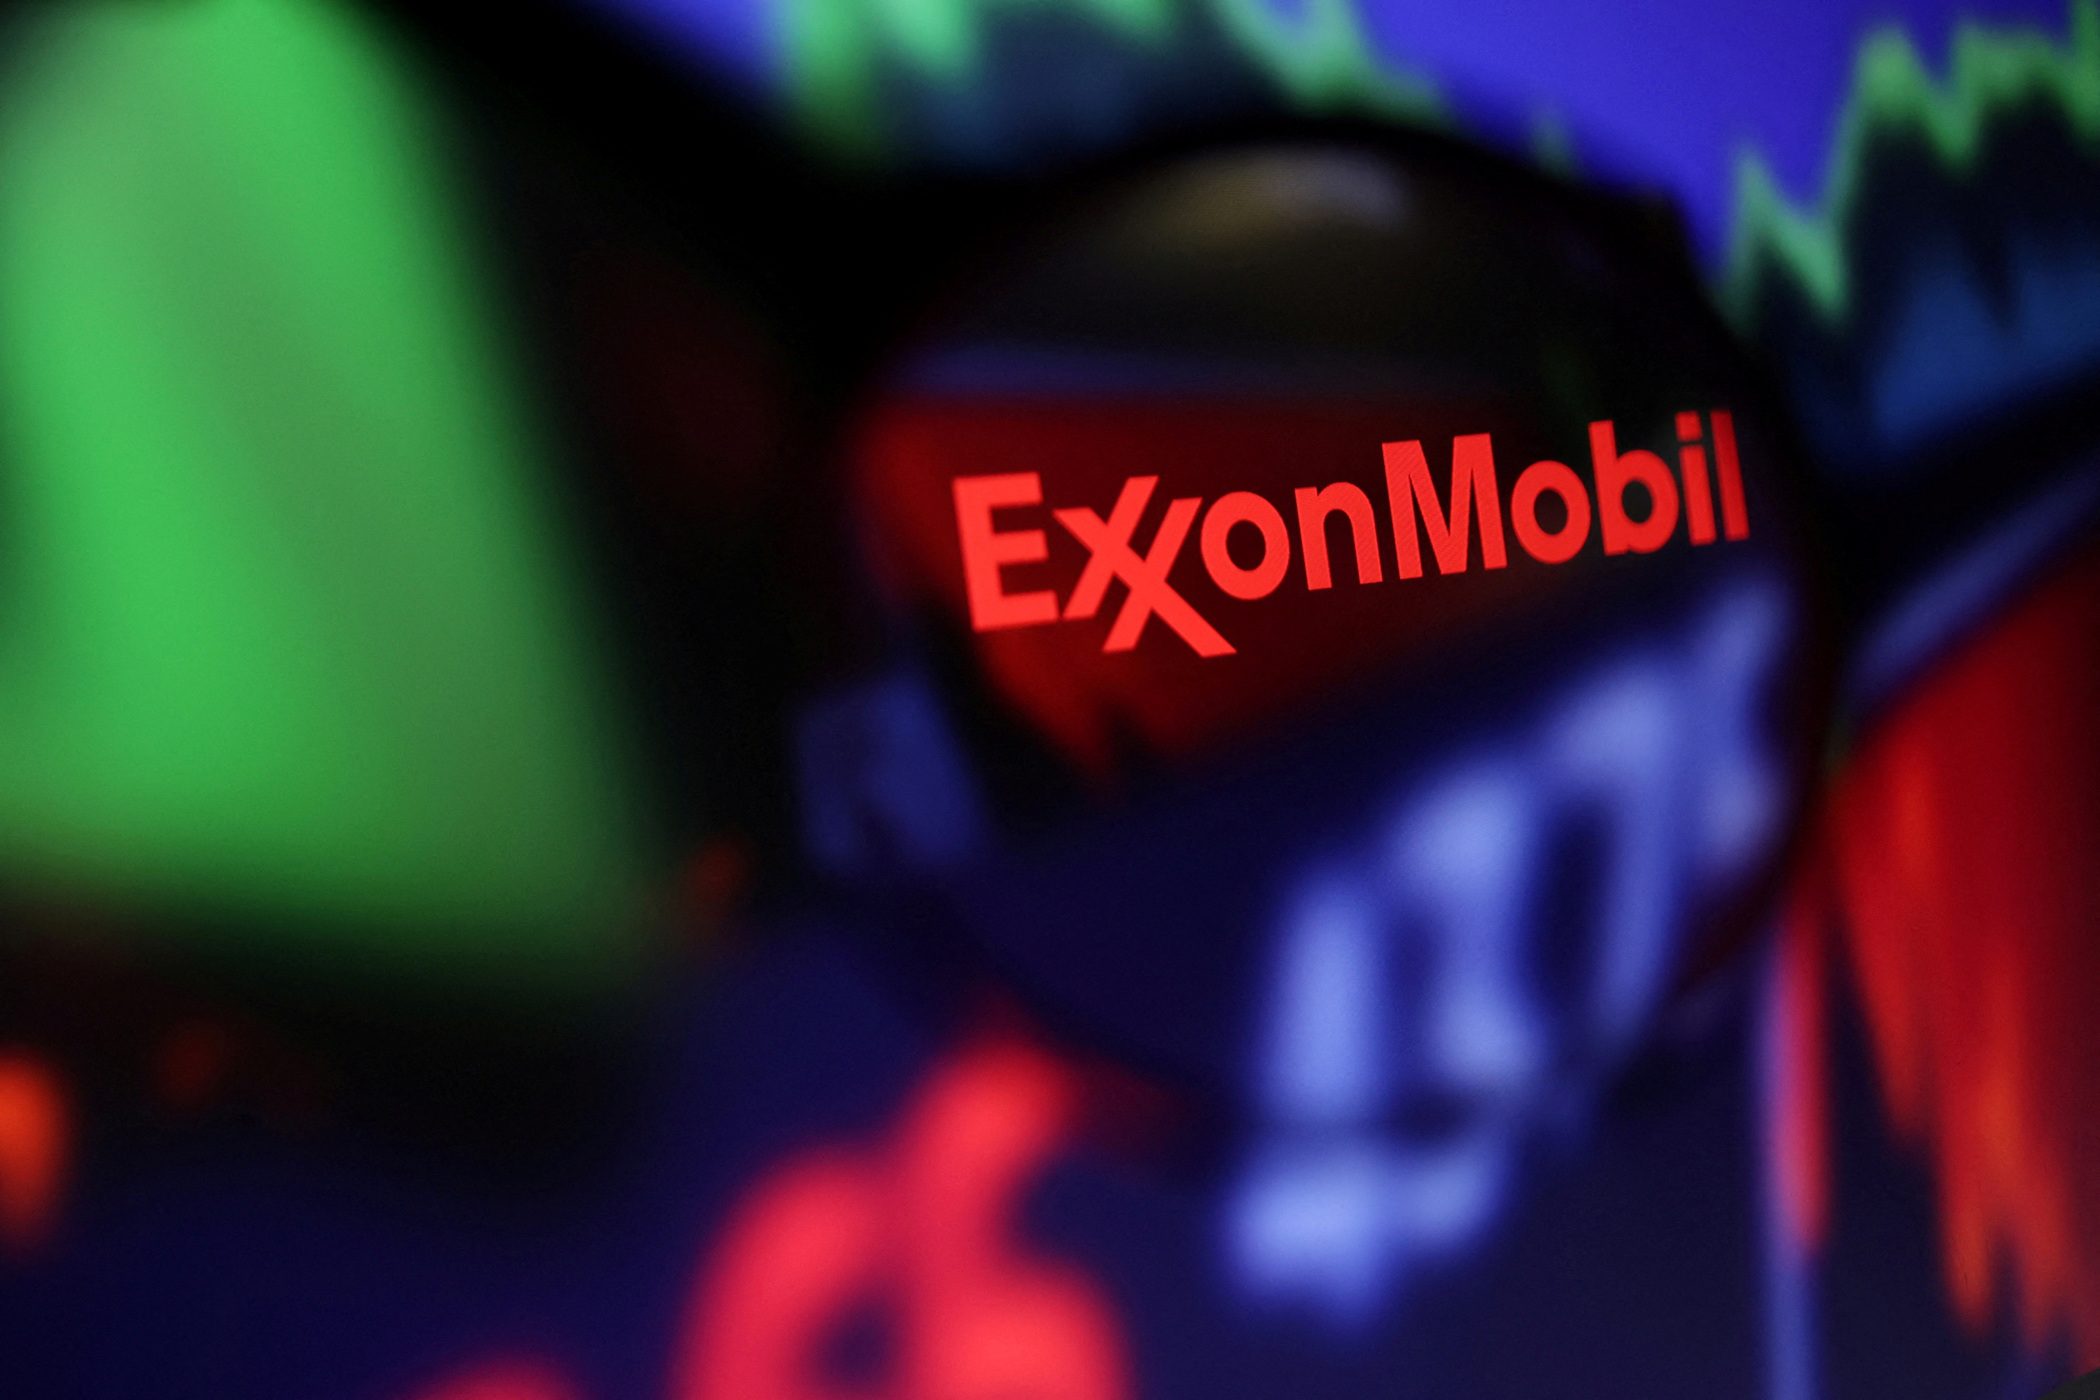 White House blasts Exxon over historic $56-billion annual profit